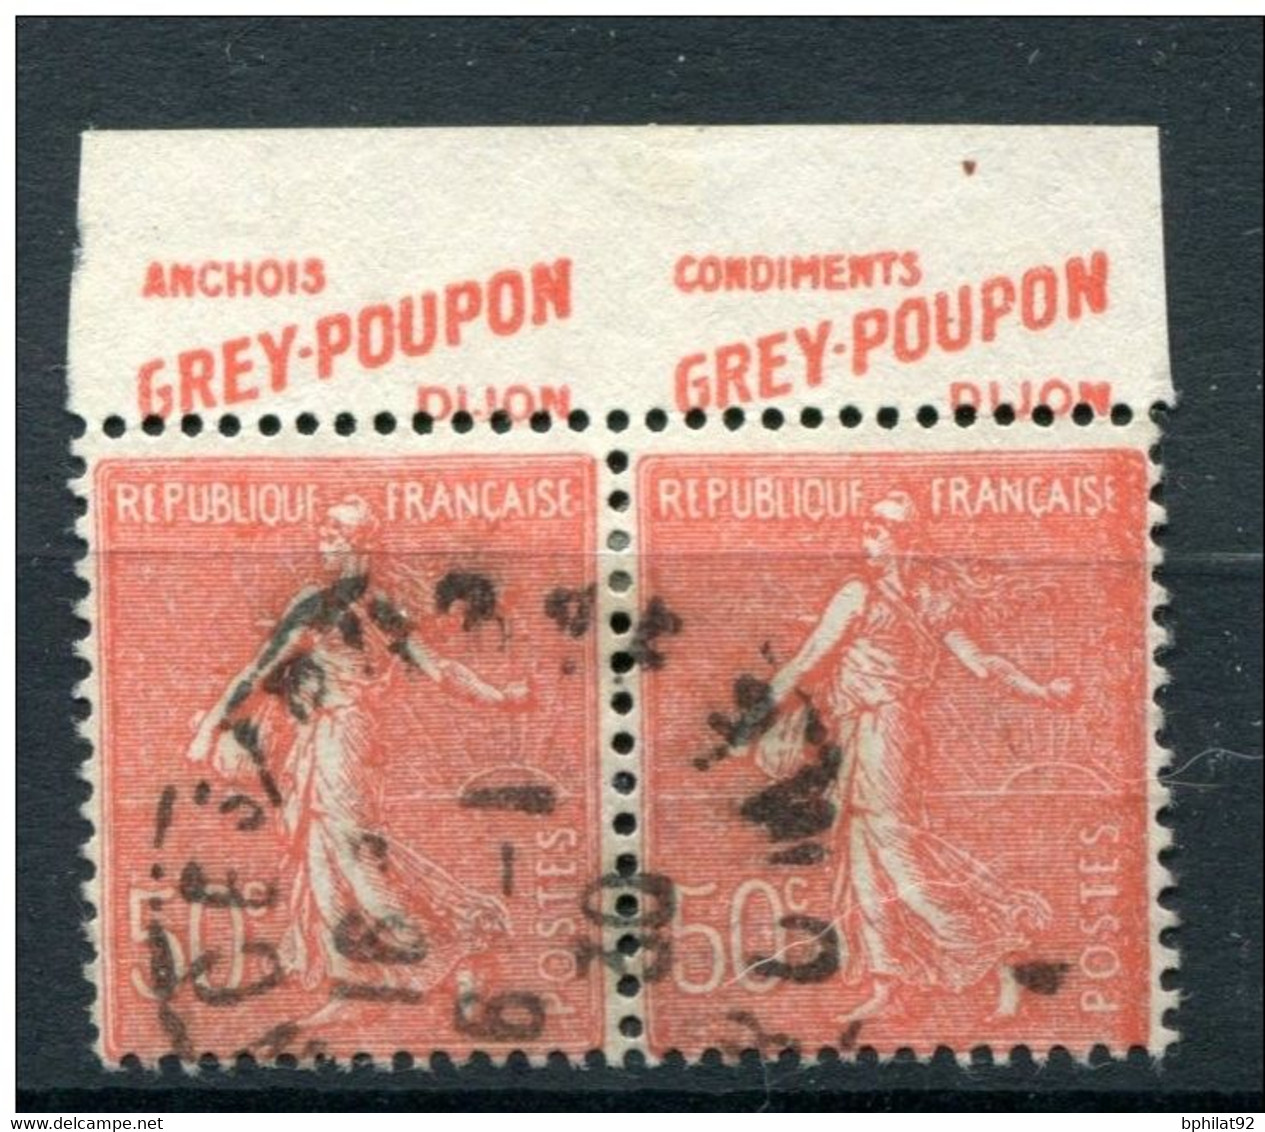 !!! 50 C SEMEUSE LIGNEE PAIRE AVEC PUBS GREY POUPON OBLITEREE - ABSENCE DE PERFO EN HAUT - Used Stamps